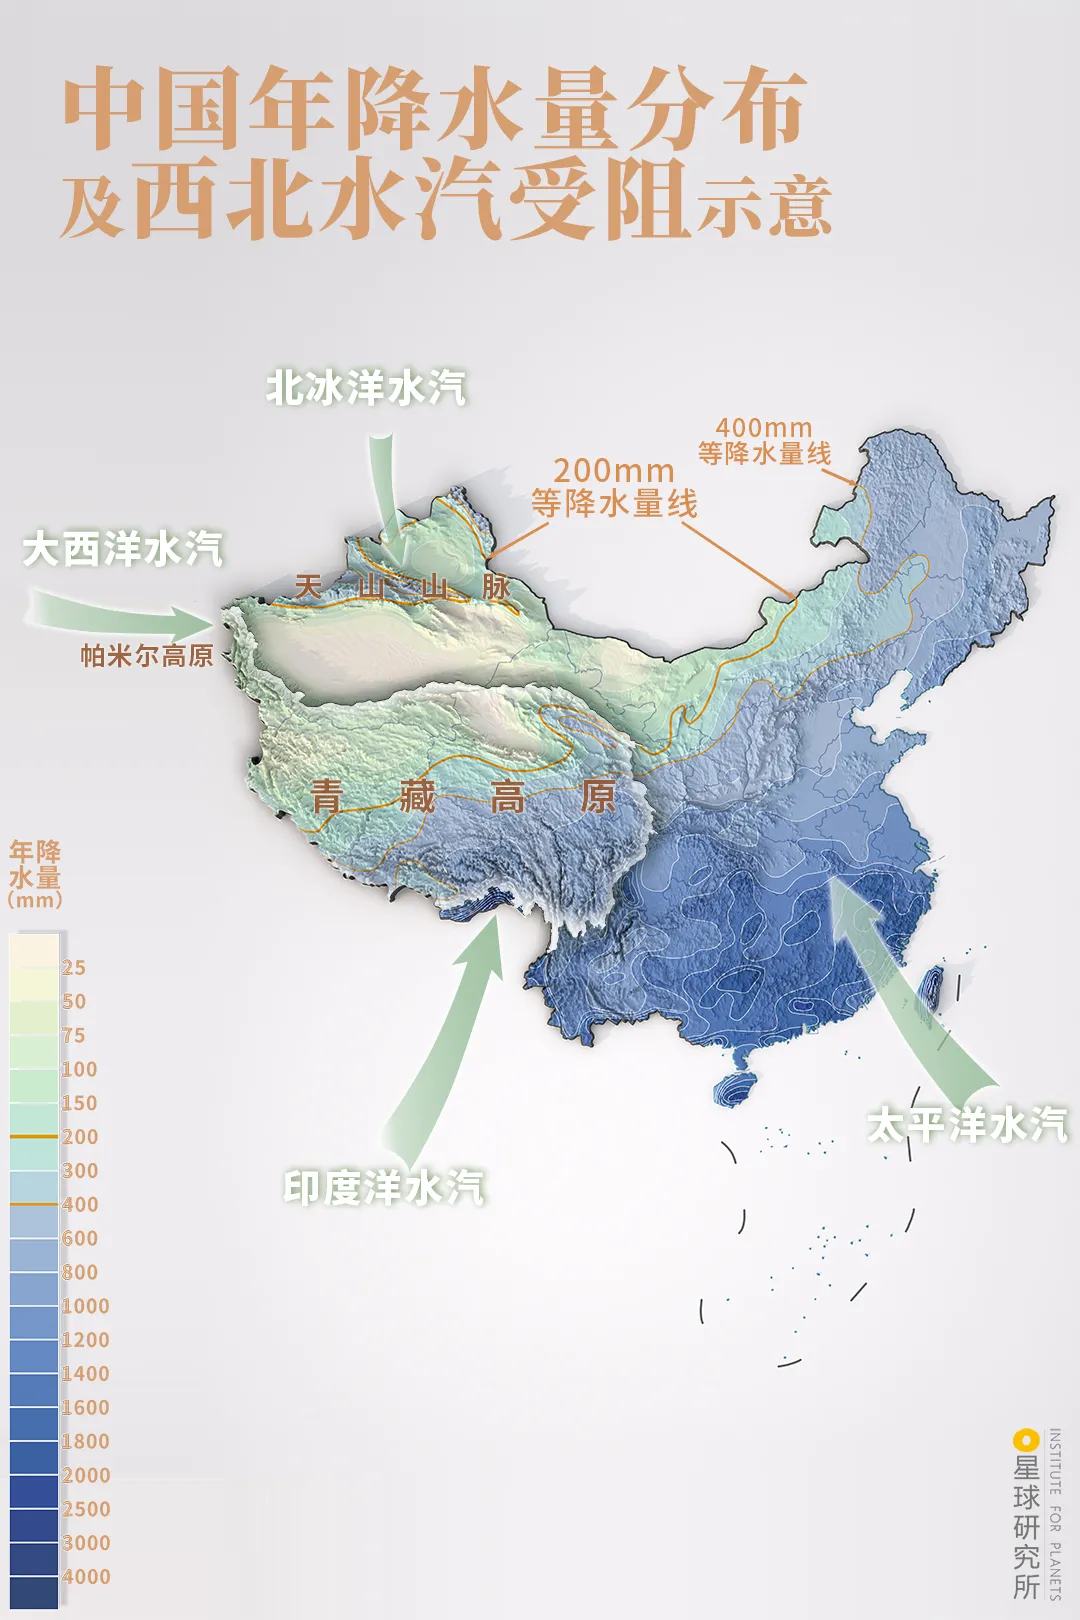 ▼(中国年降水量分布及西北多个方向水汽受高原,山